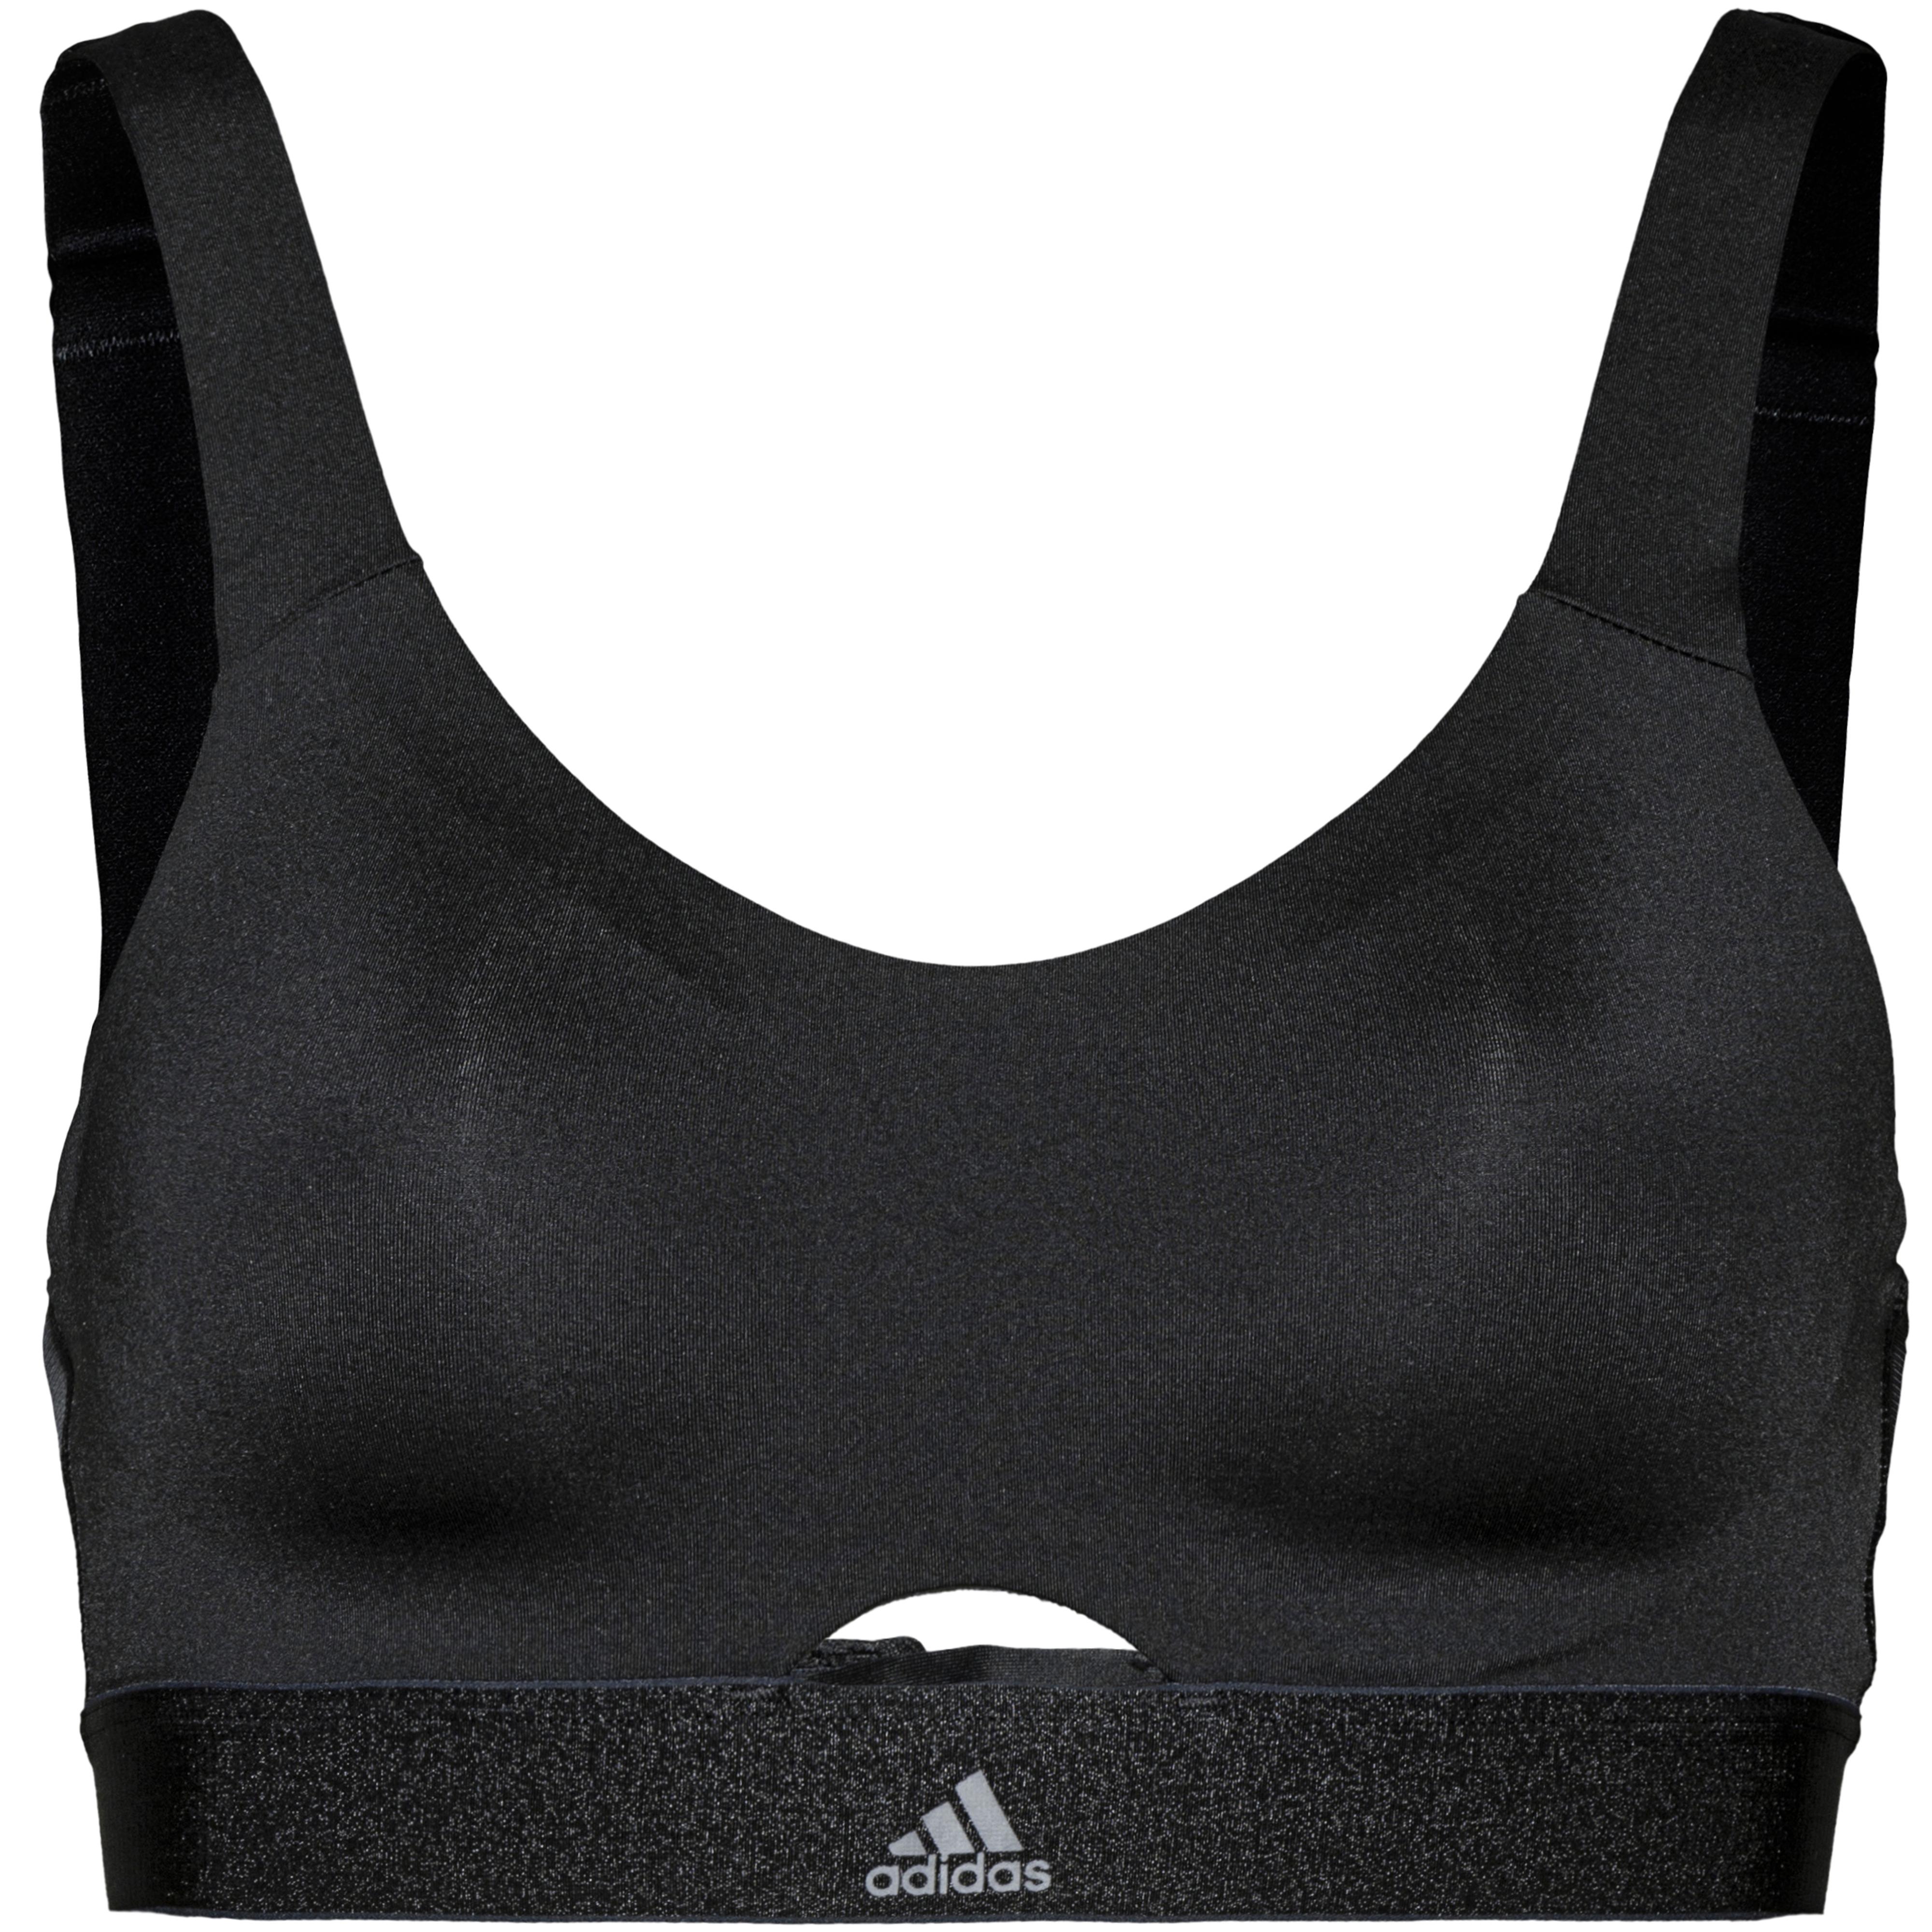 Adidas Stronger Soft BH Damen black im Online Shop von SportScheck kaufen